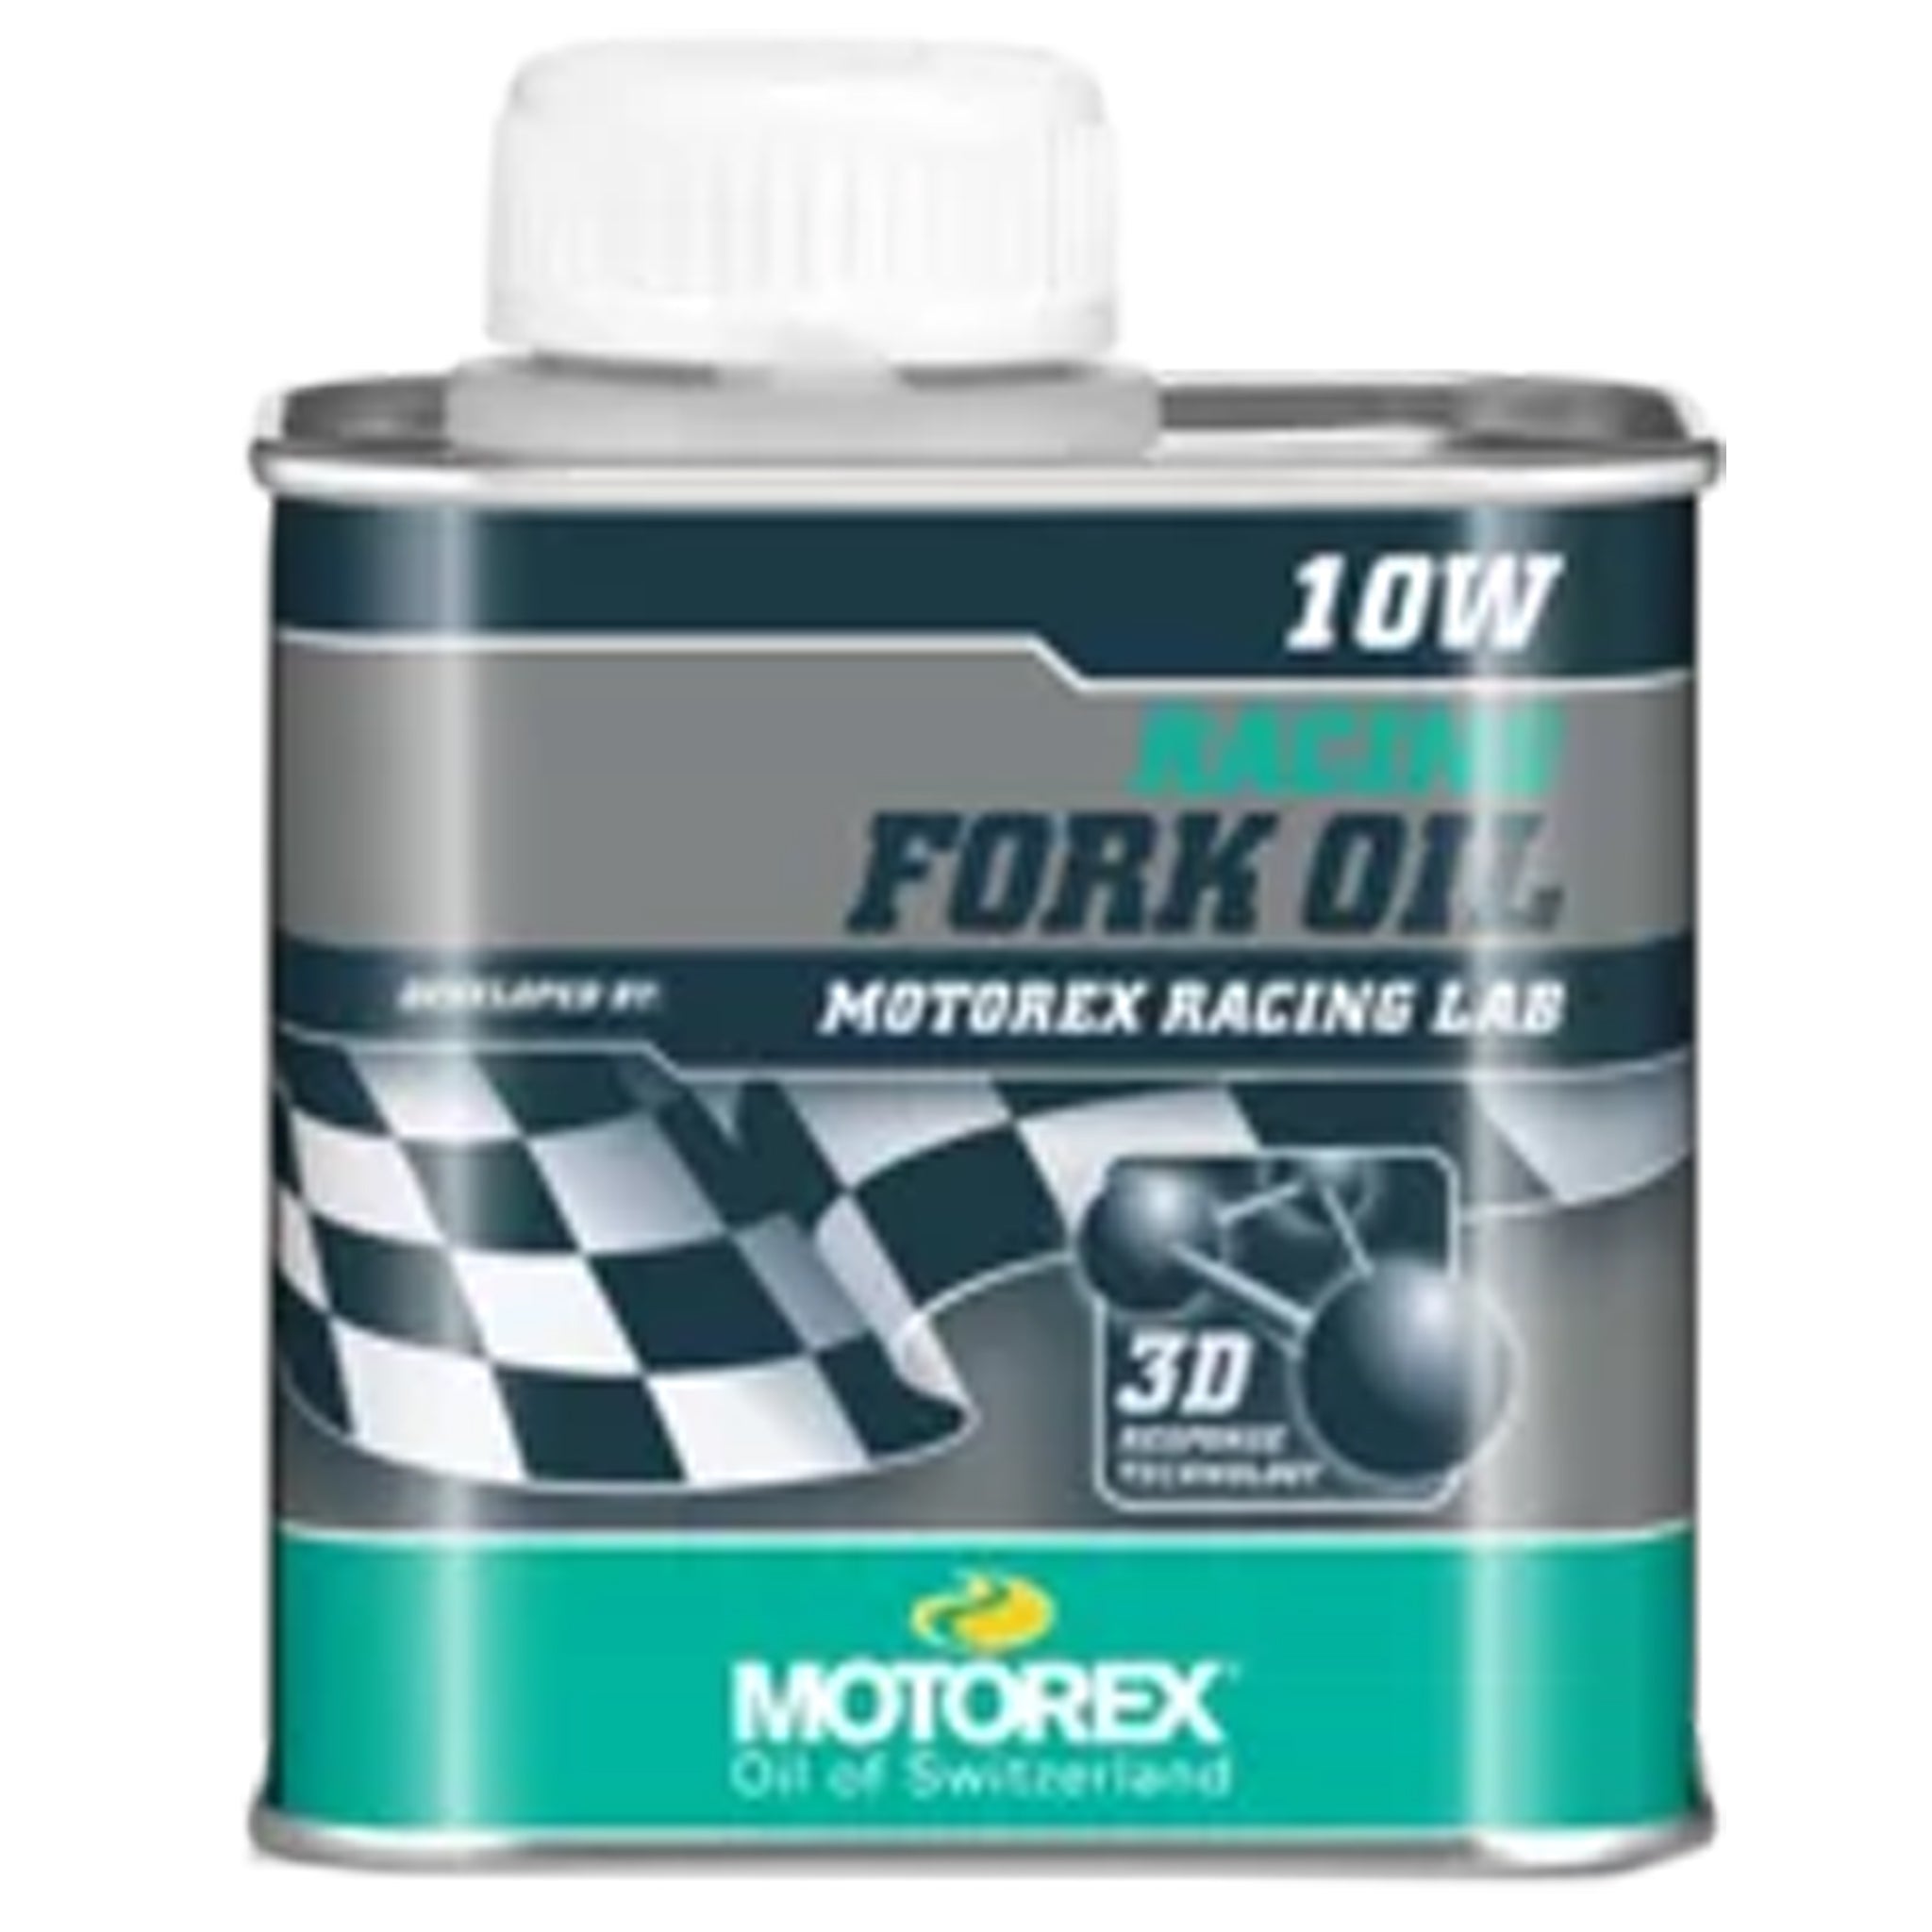 Motorex Racing Fork Oil 10wt - 250ml